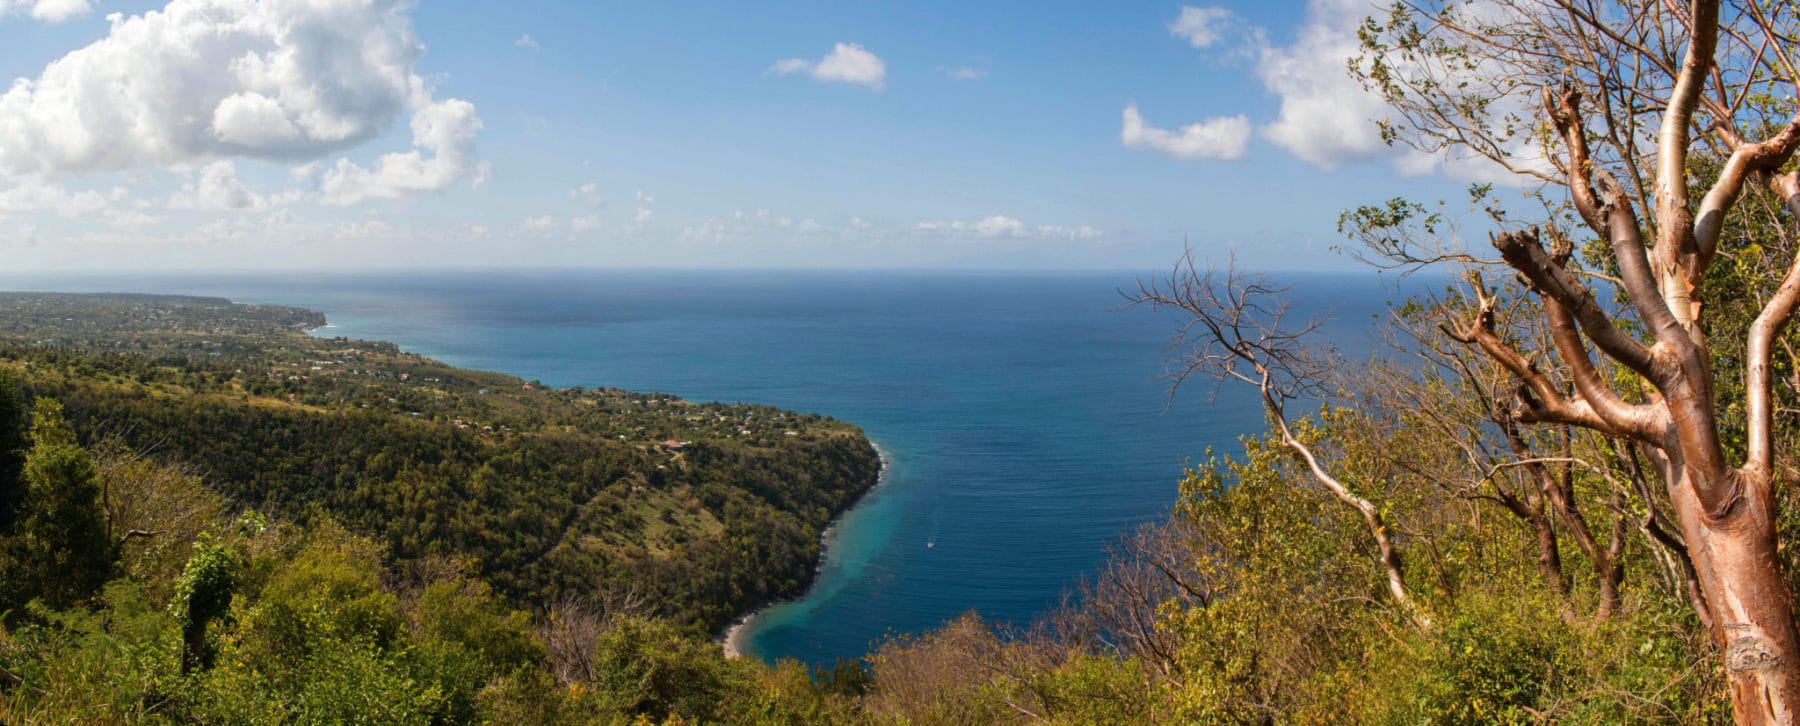 Panorama of the Caribbean Sea near St. Lucia